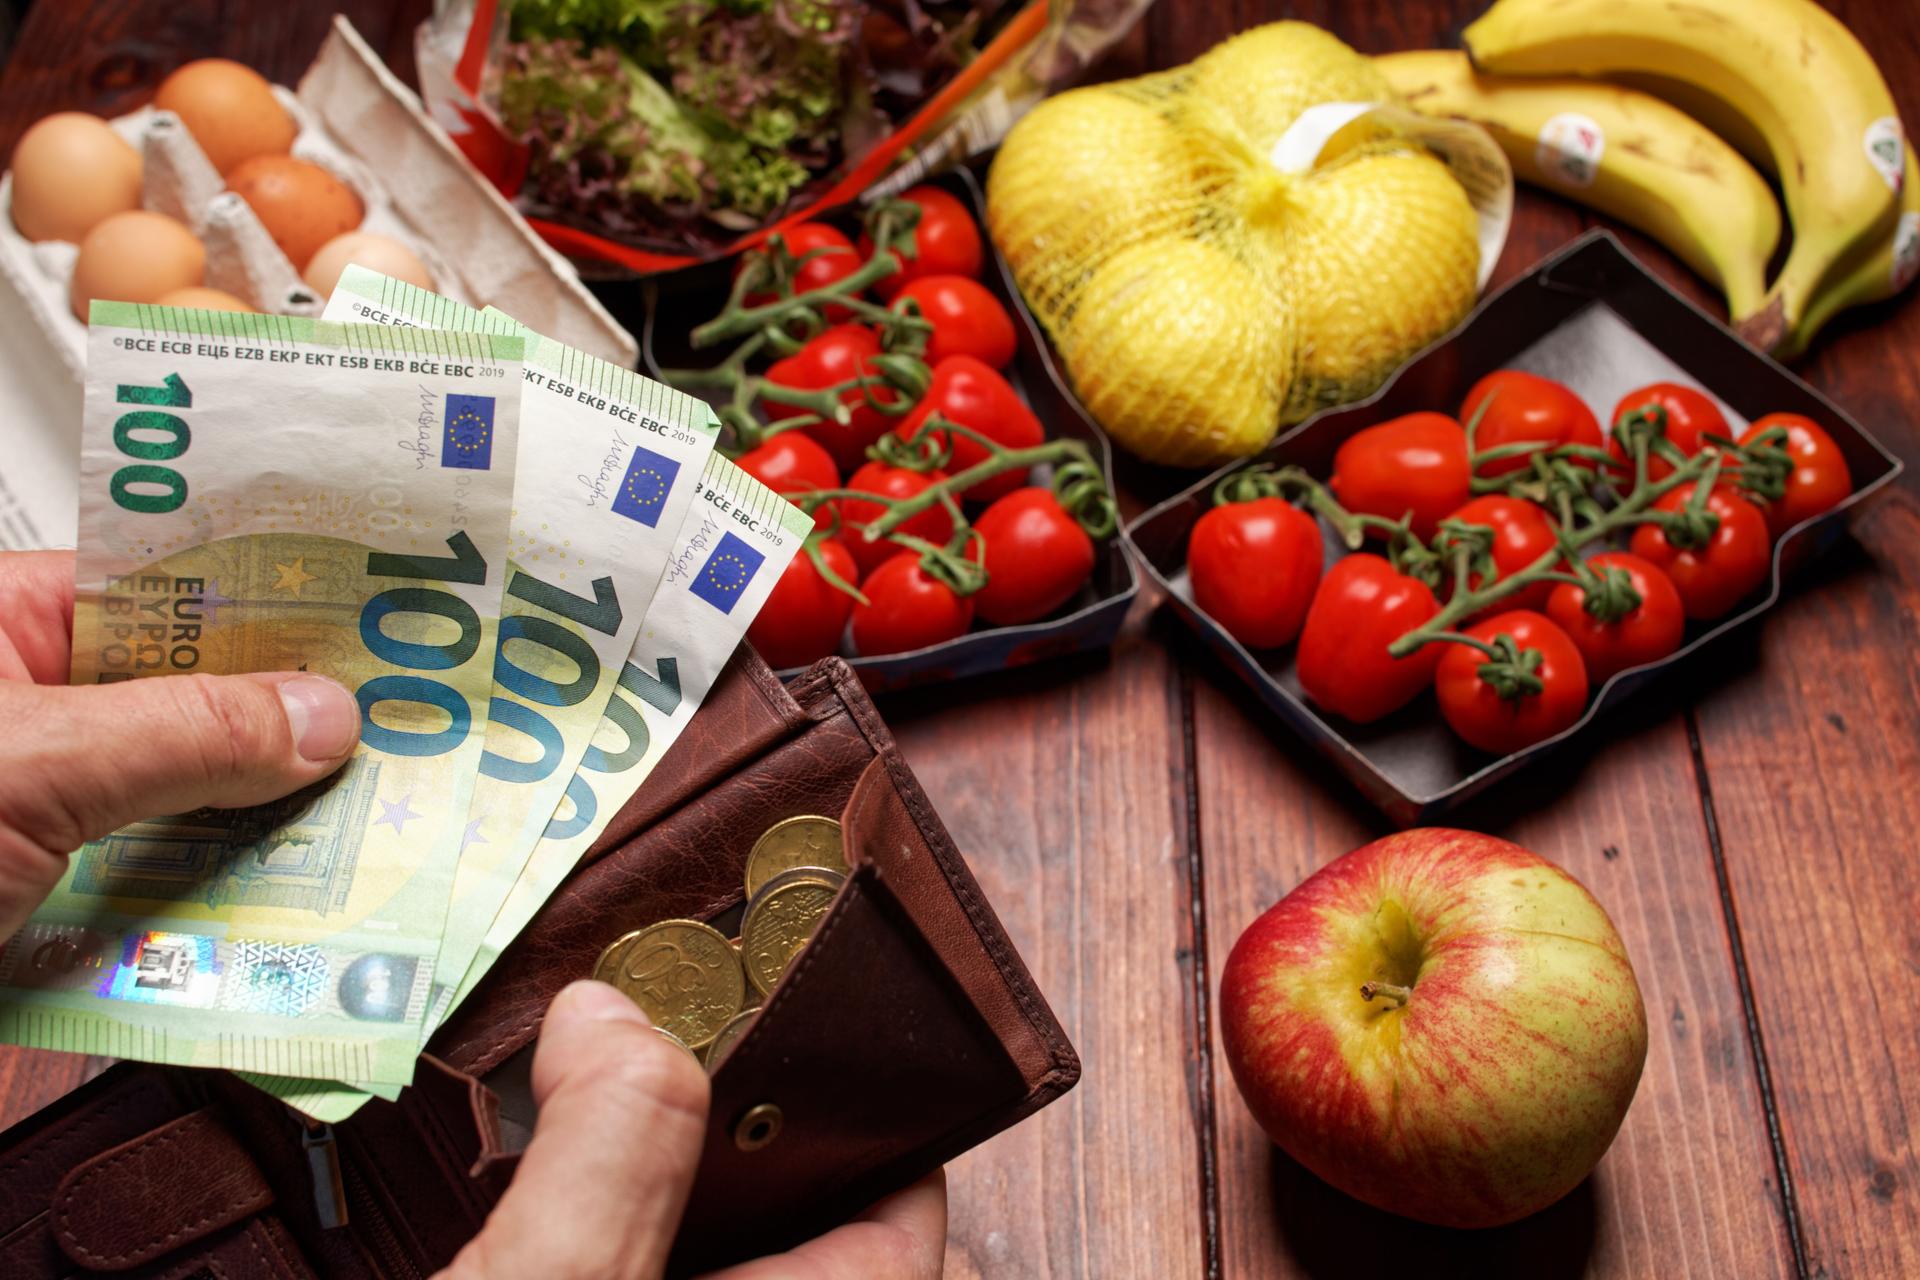 EIne Hand hält dre einhundert Euro-Scheine die andere Hand hält einen Geldbeutel im Hintergund liegt ein Einkauf mit Obst Gemüse und Eiern.